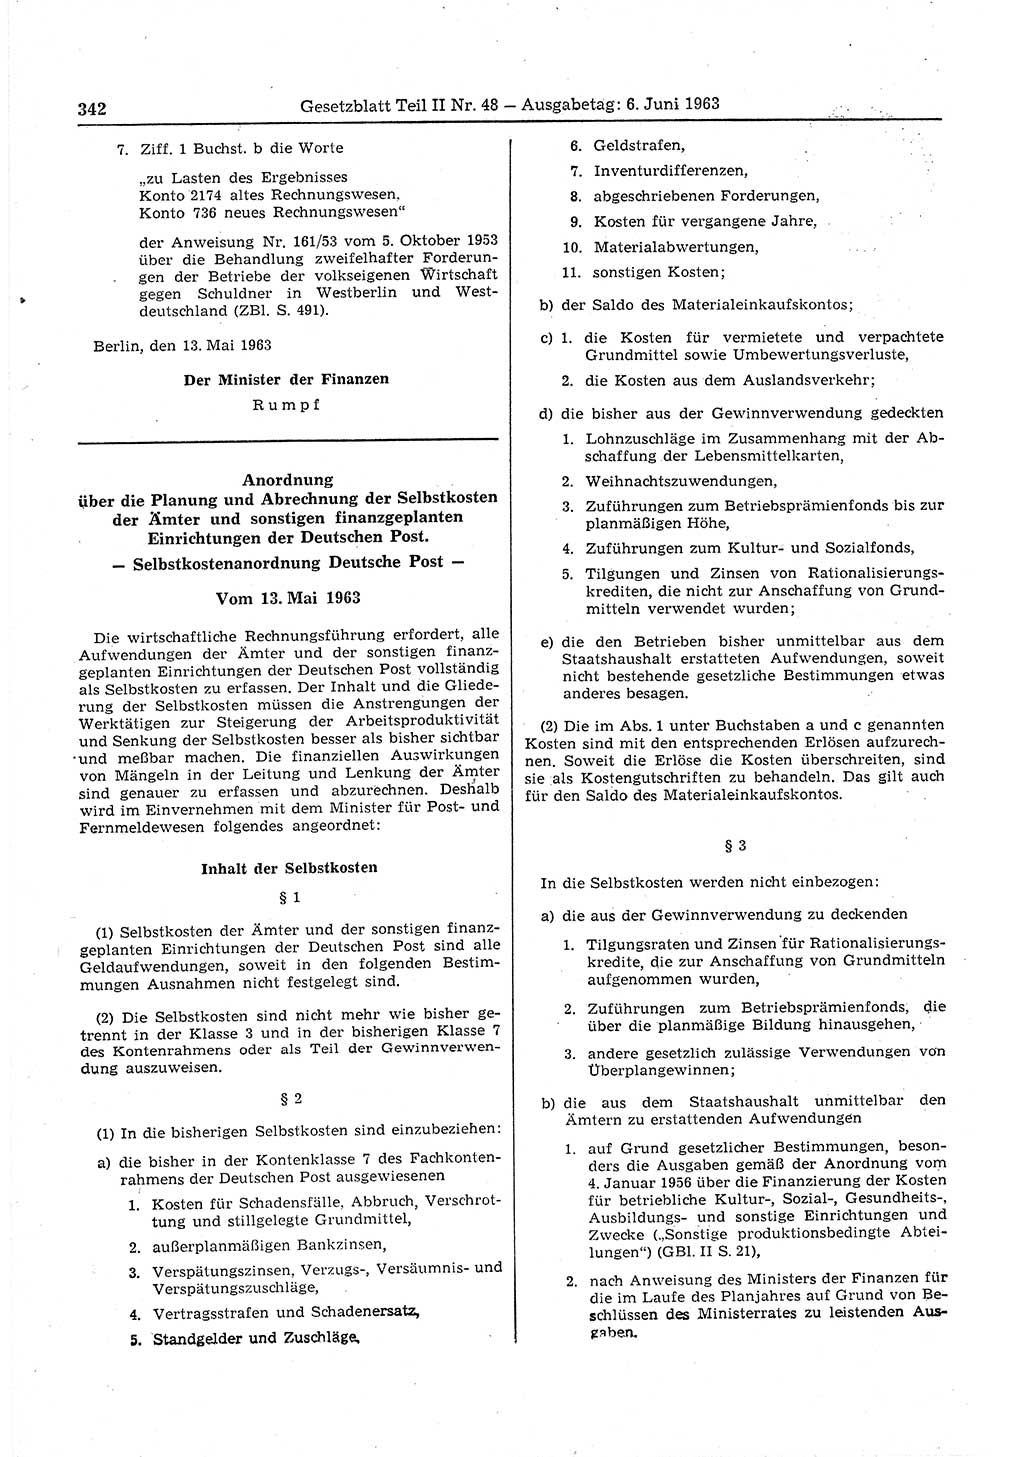 Gesetzblatt (GBl.) der Deutschen Demokratischen Republik (DDR) Teil ⅠⅠ 1963, Seite 342 (GBl. DDR ⅠⅠ 1963, S. 342)